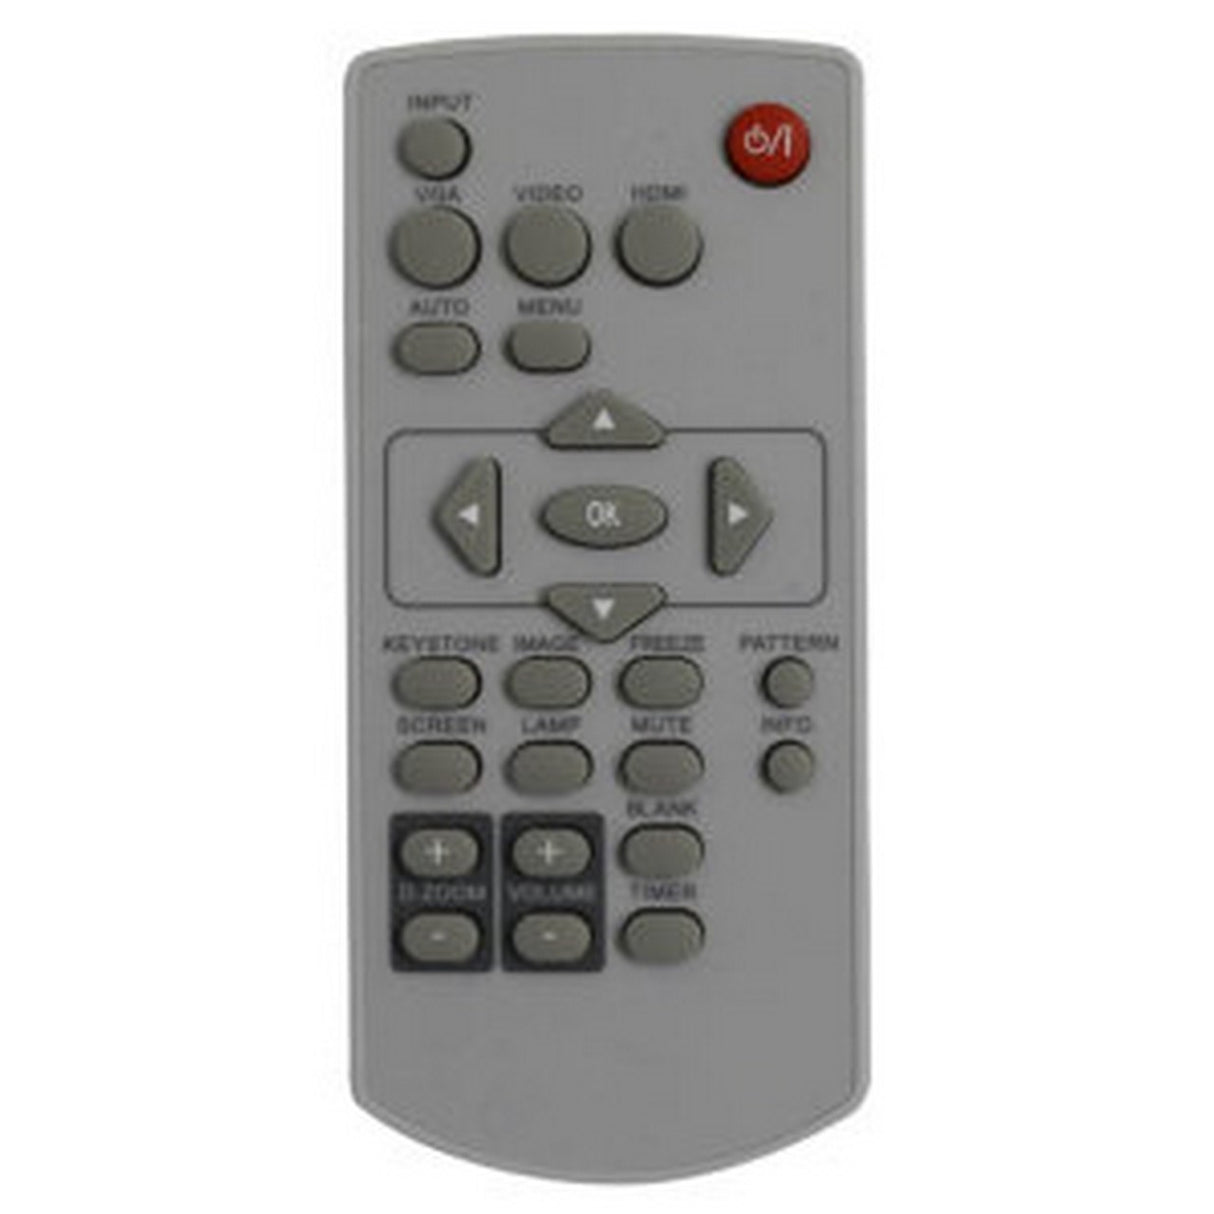 Eiki 63910016 Remote Control for EK-305U, EK-303U, EK-301W, EK-302X, EK-100W, EK-101X, EK-102X and EK-103X Video Projectors